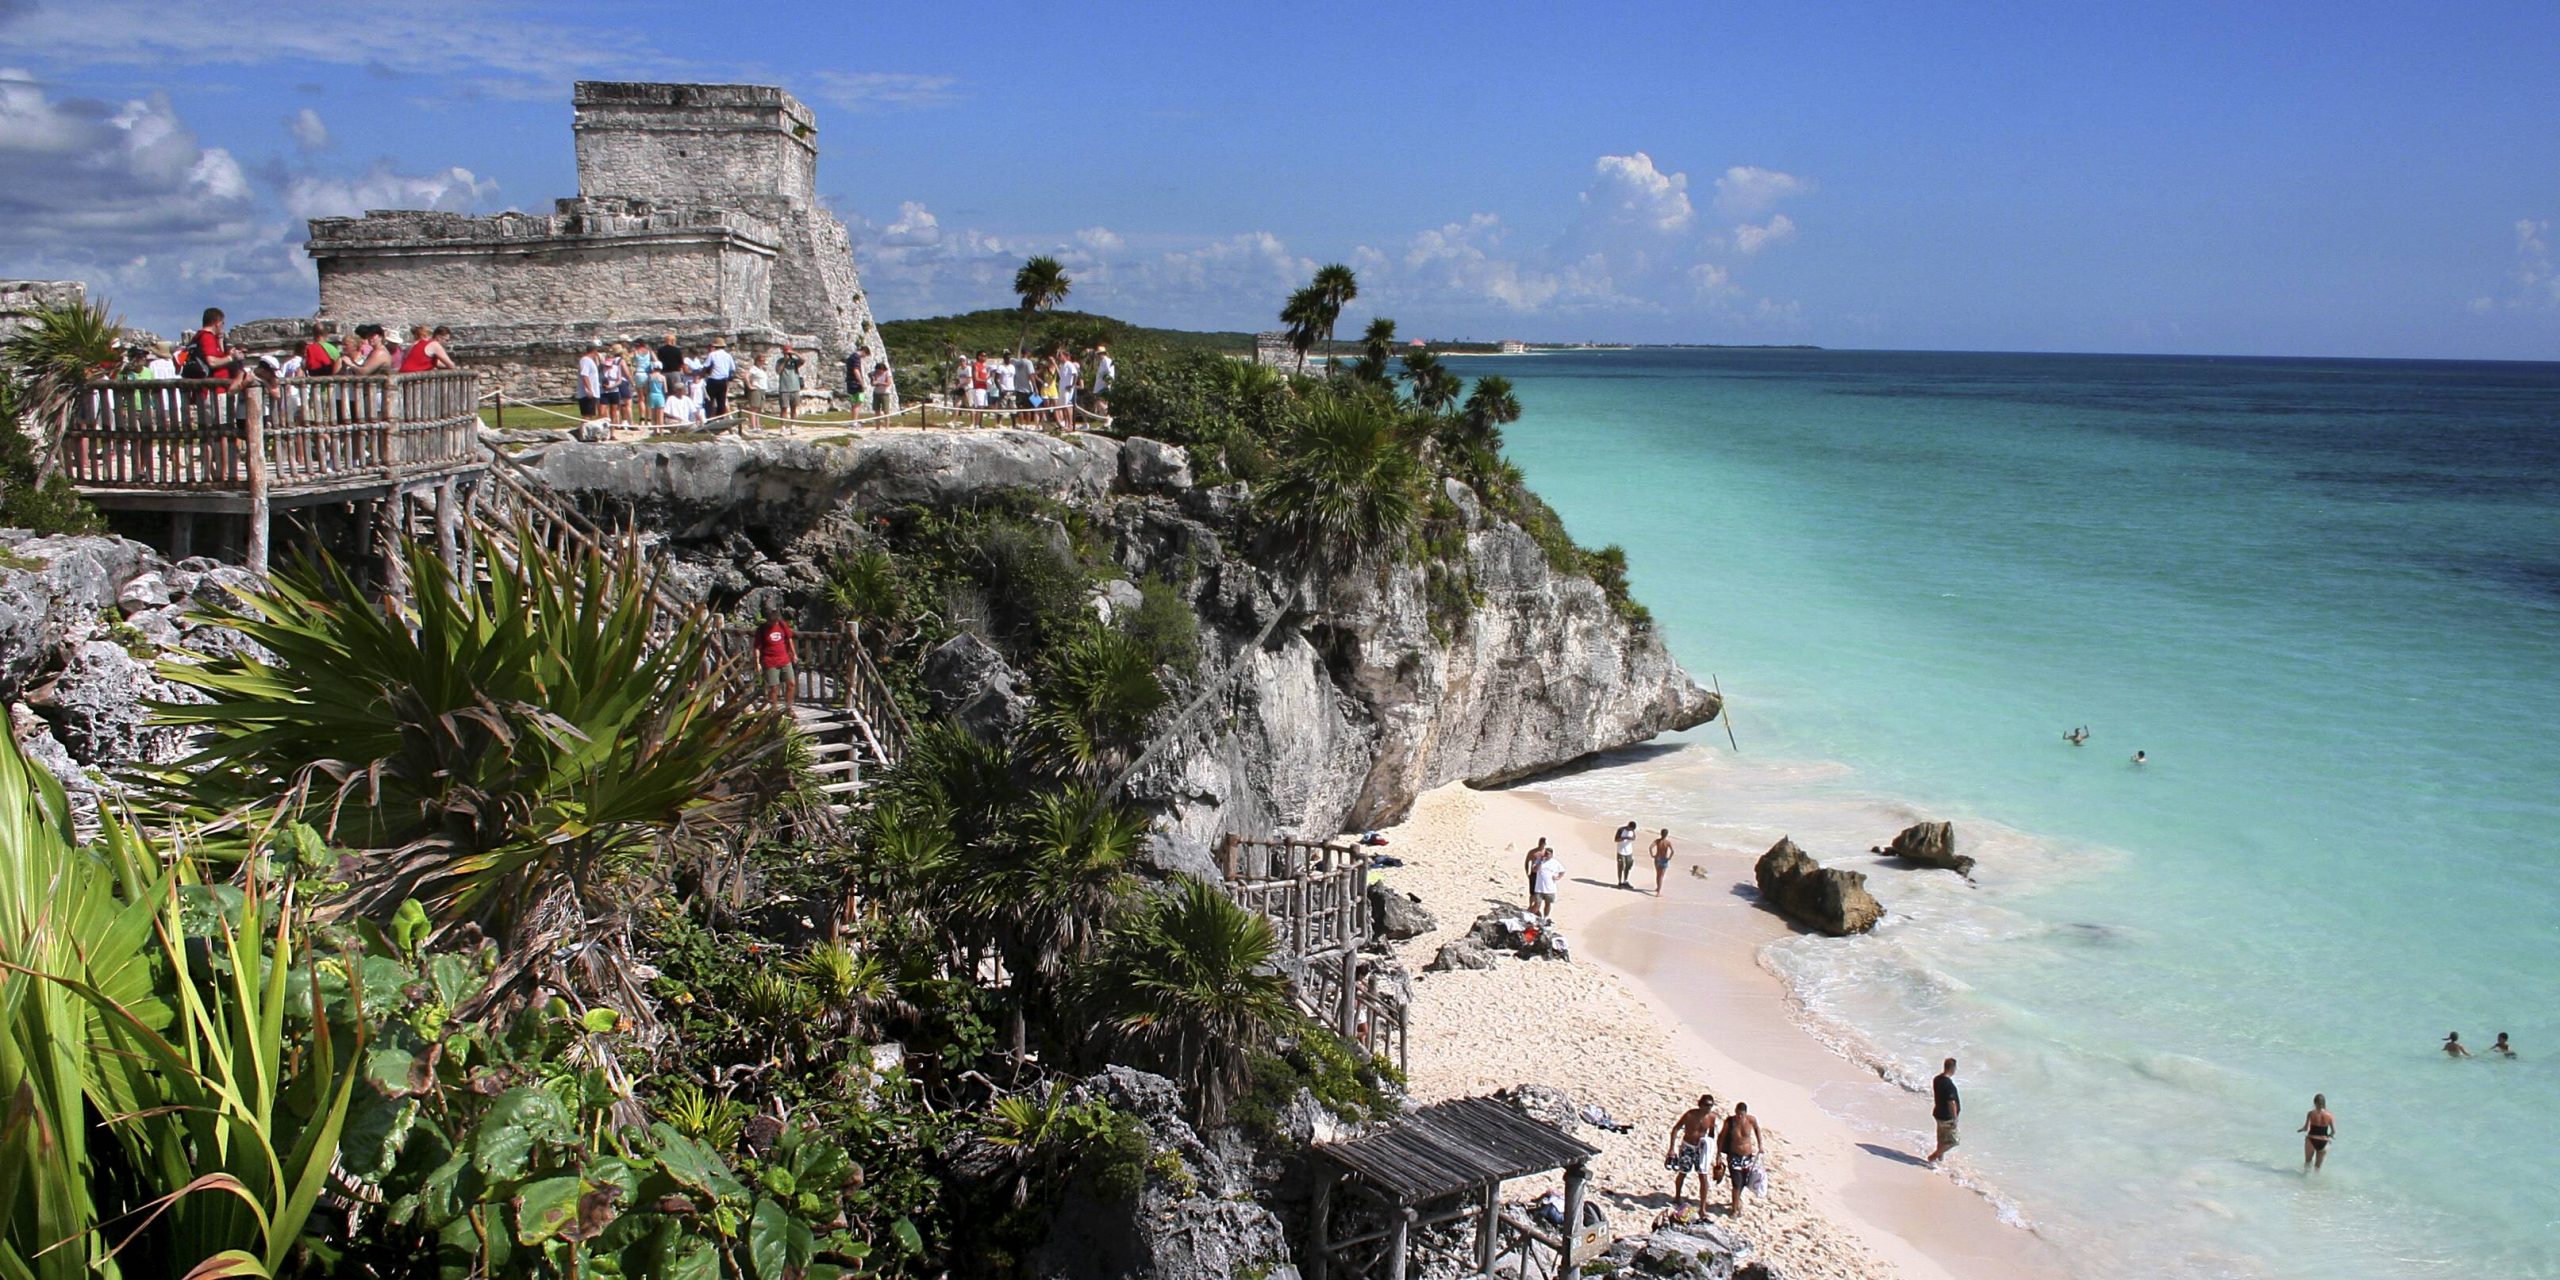 Die Maya-Ruinen an der Karibikküste bei Tulum sind ein beliebtes Fotomotiv.